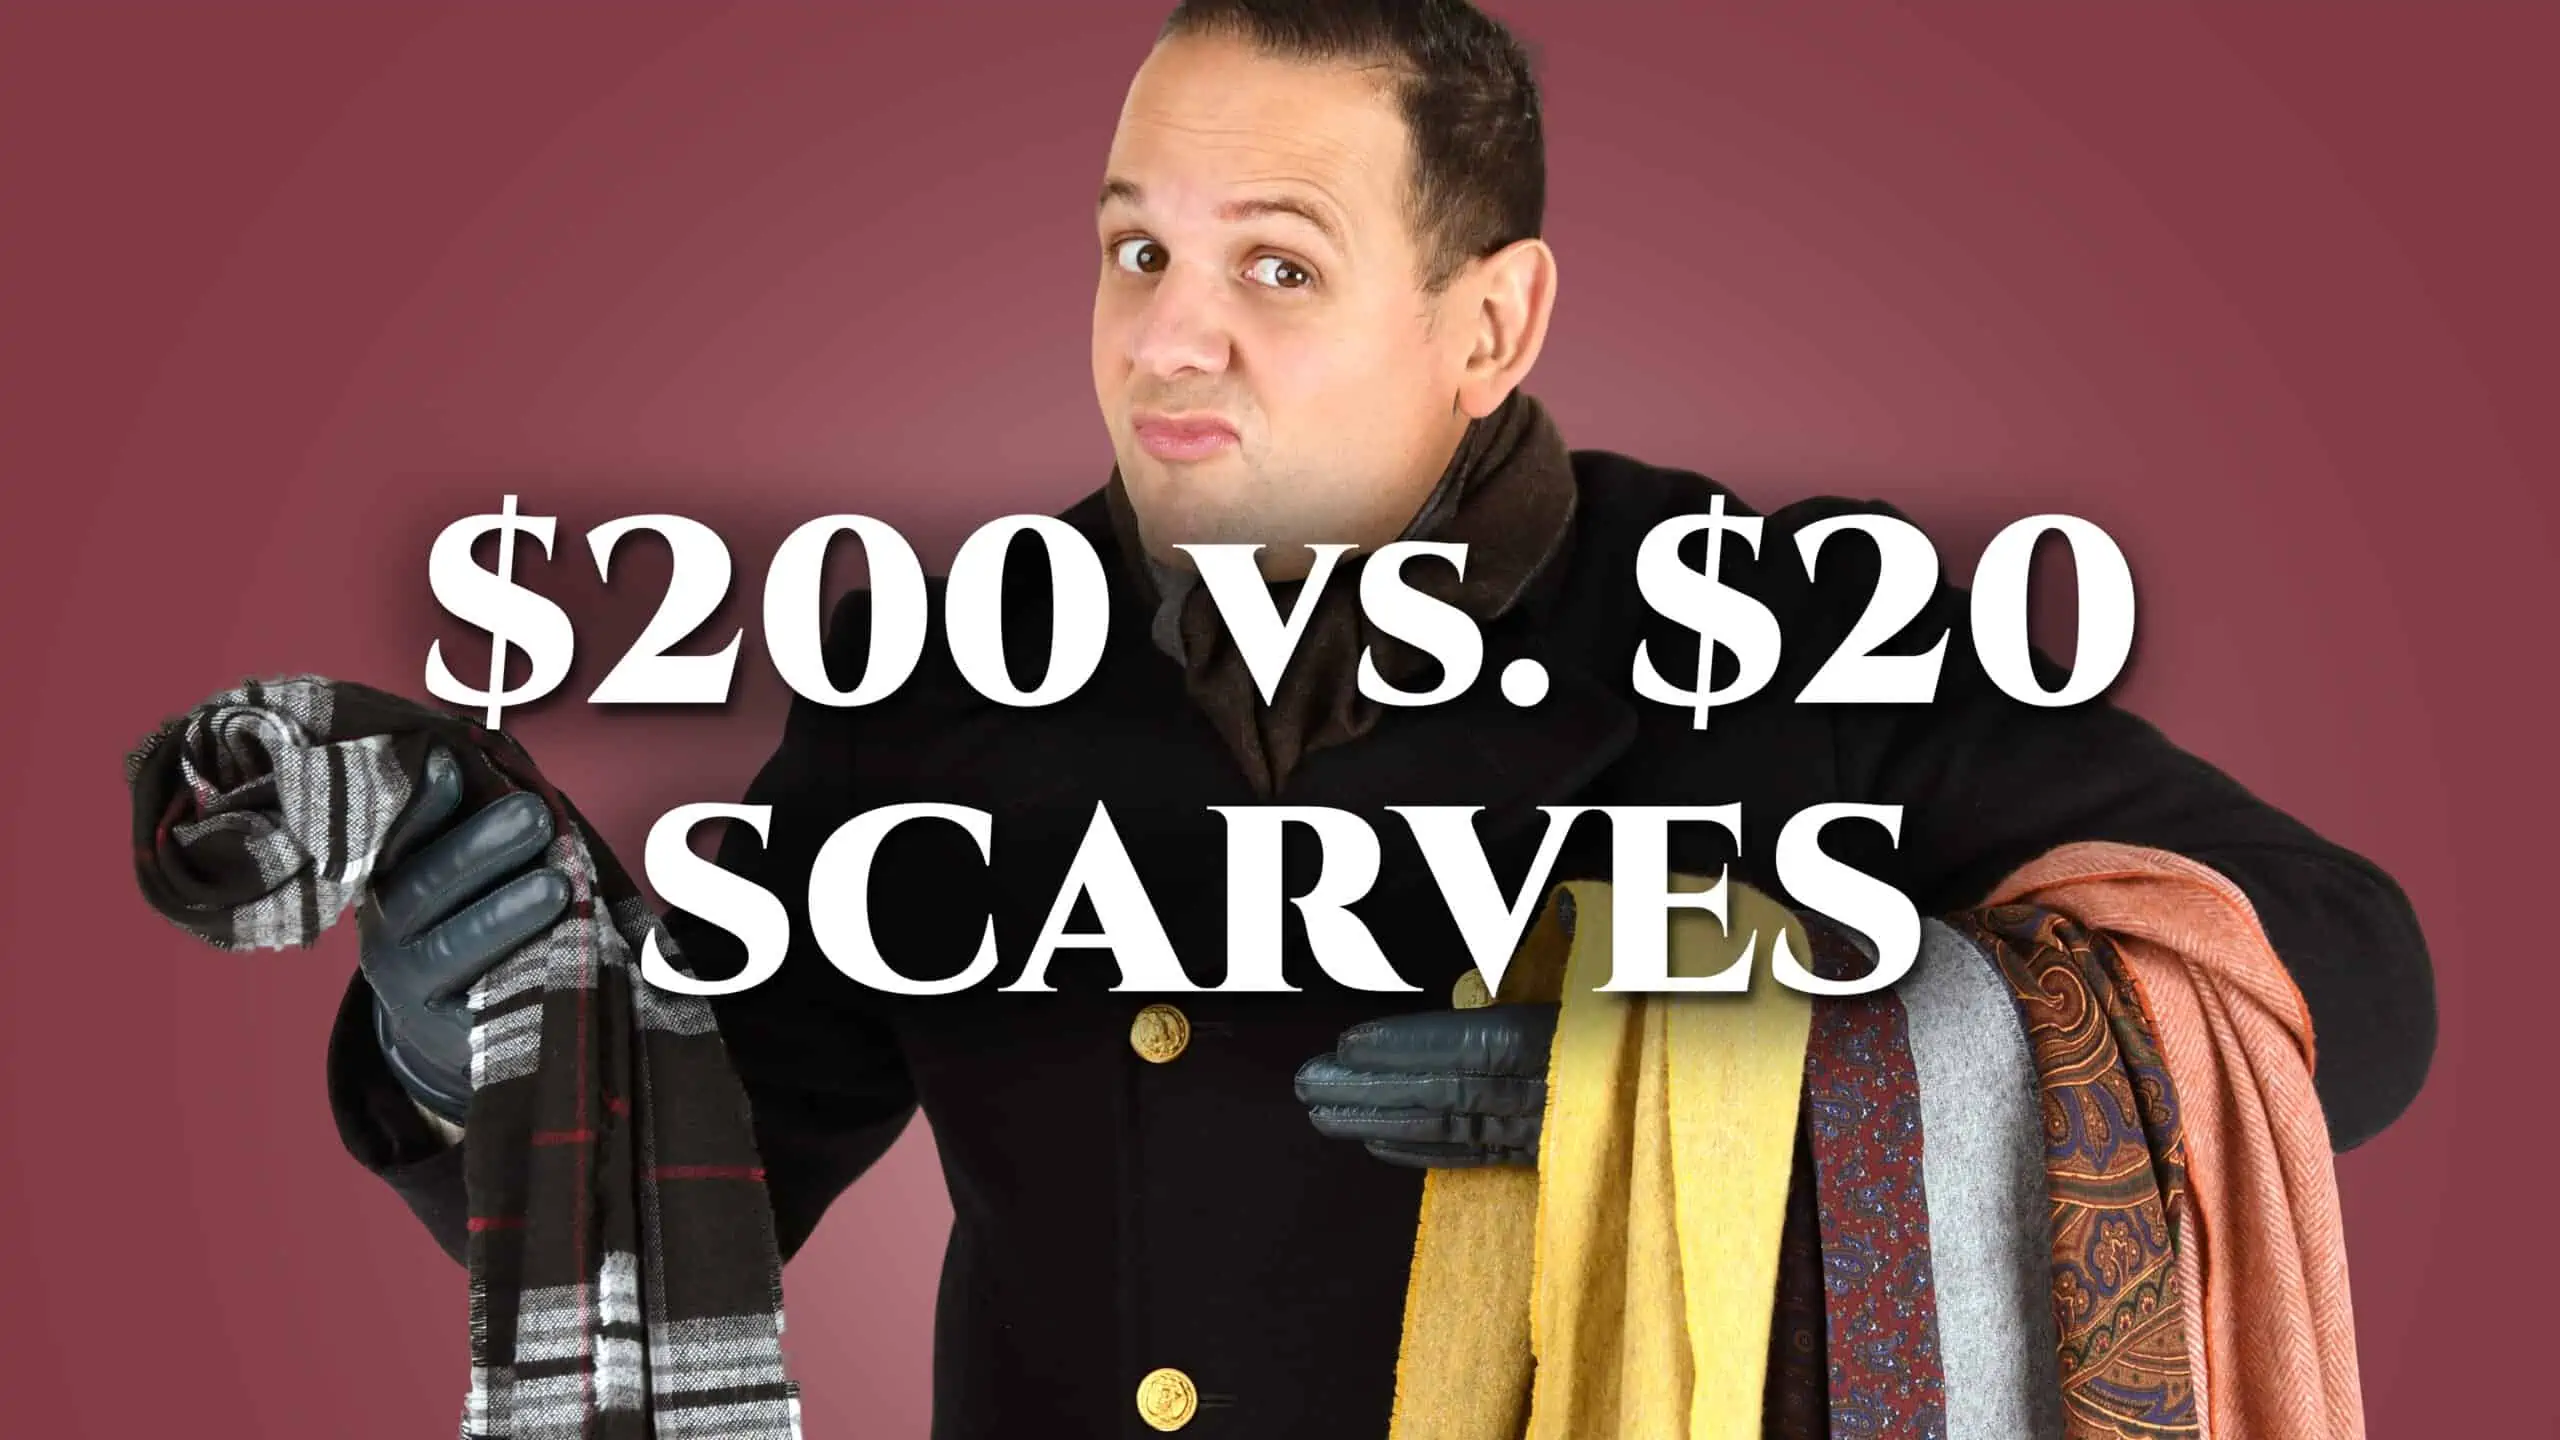 20 vs 200 scarves 3840x2160 scaled